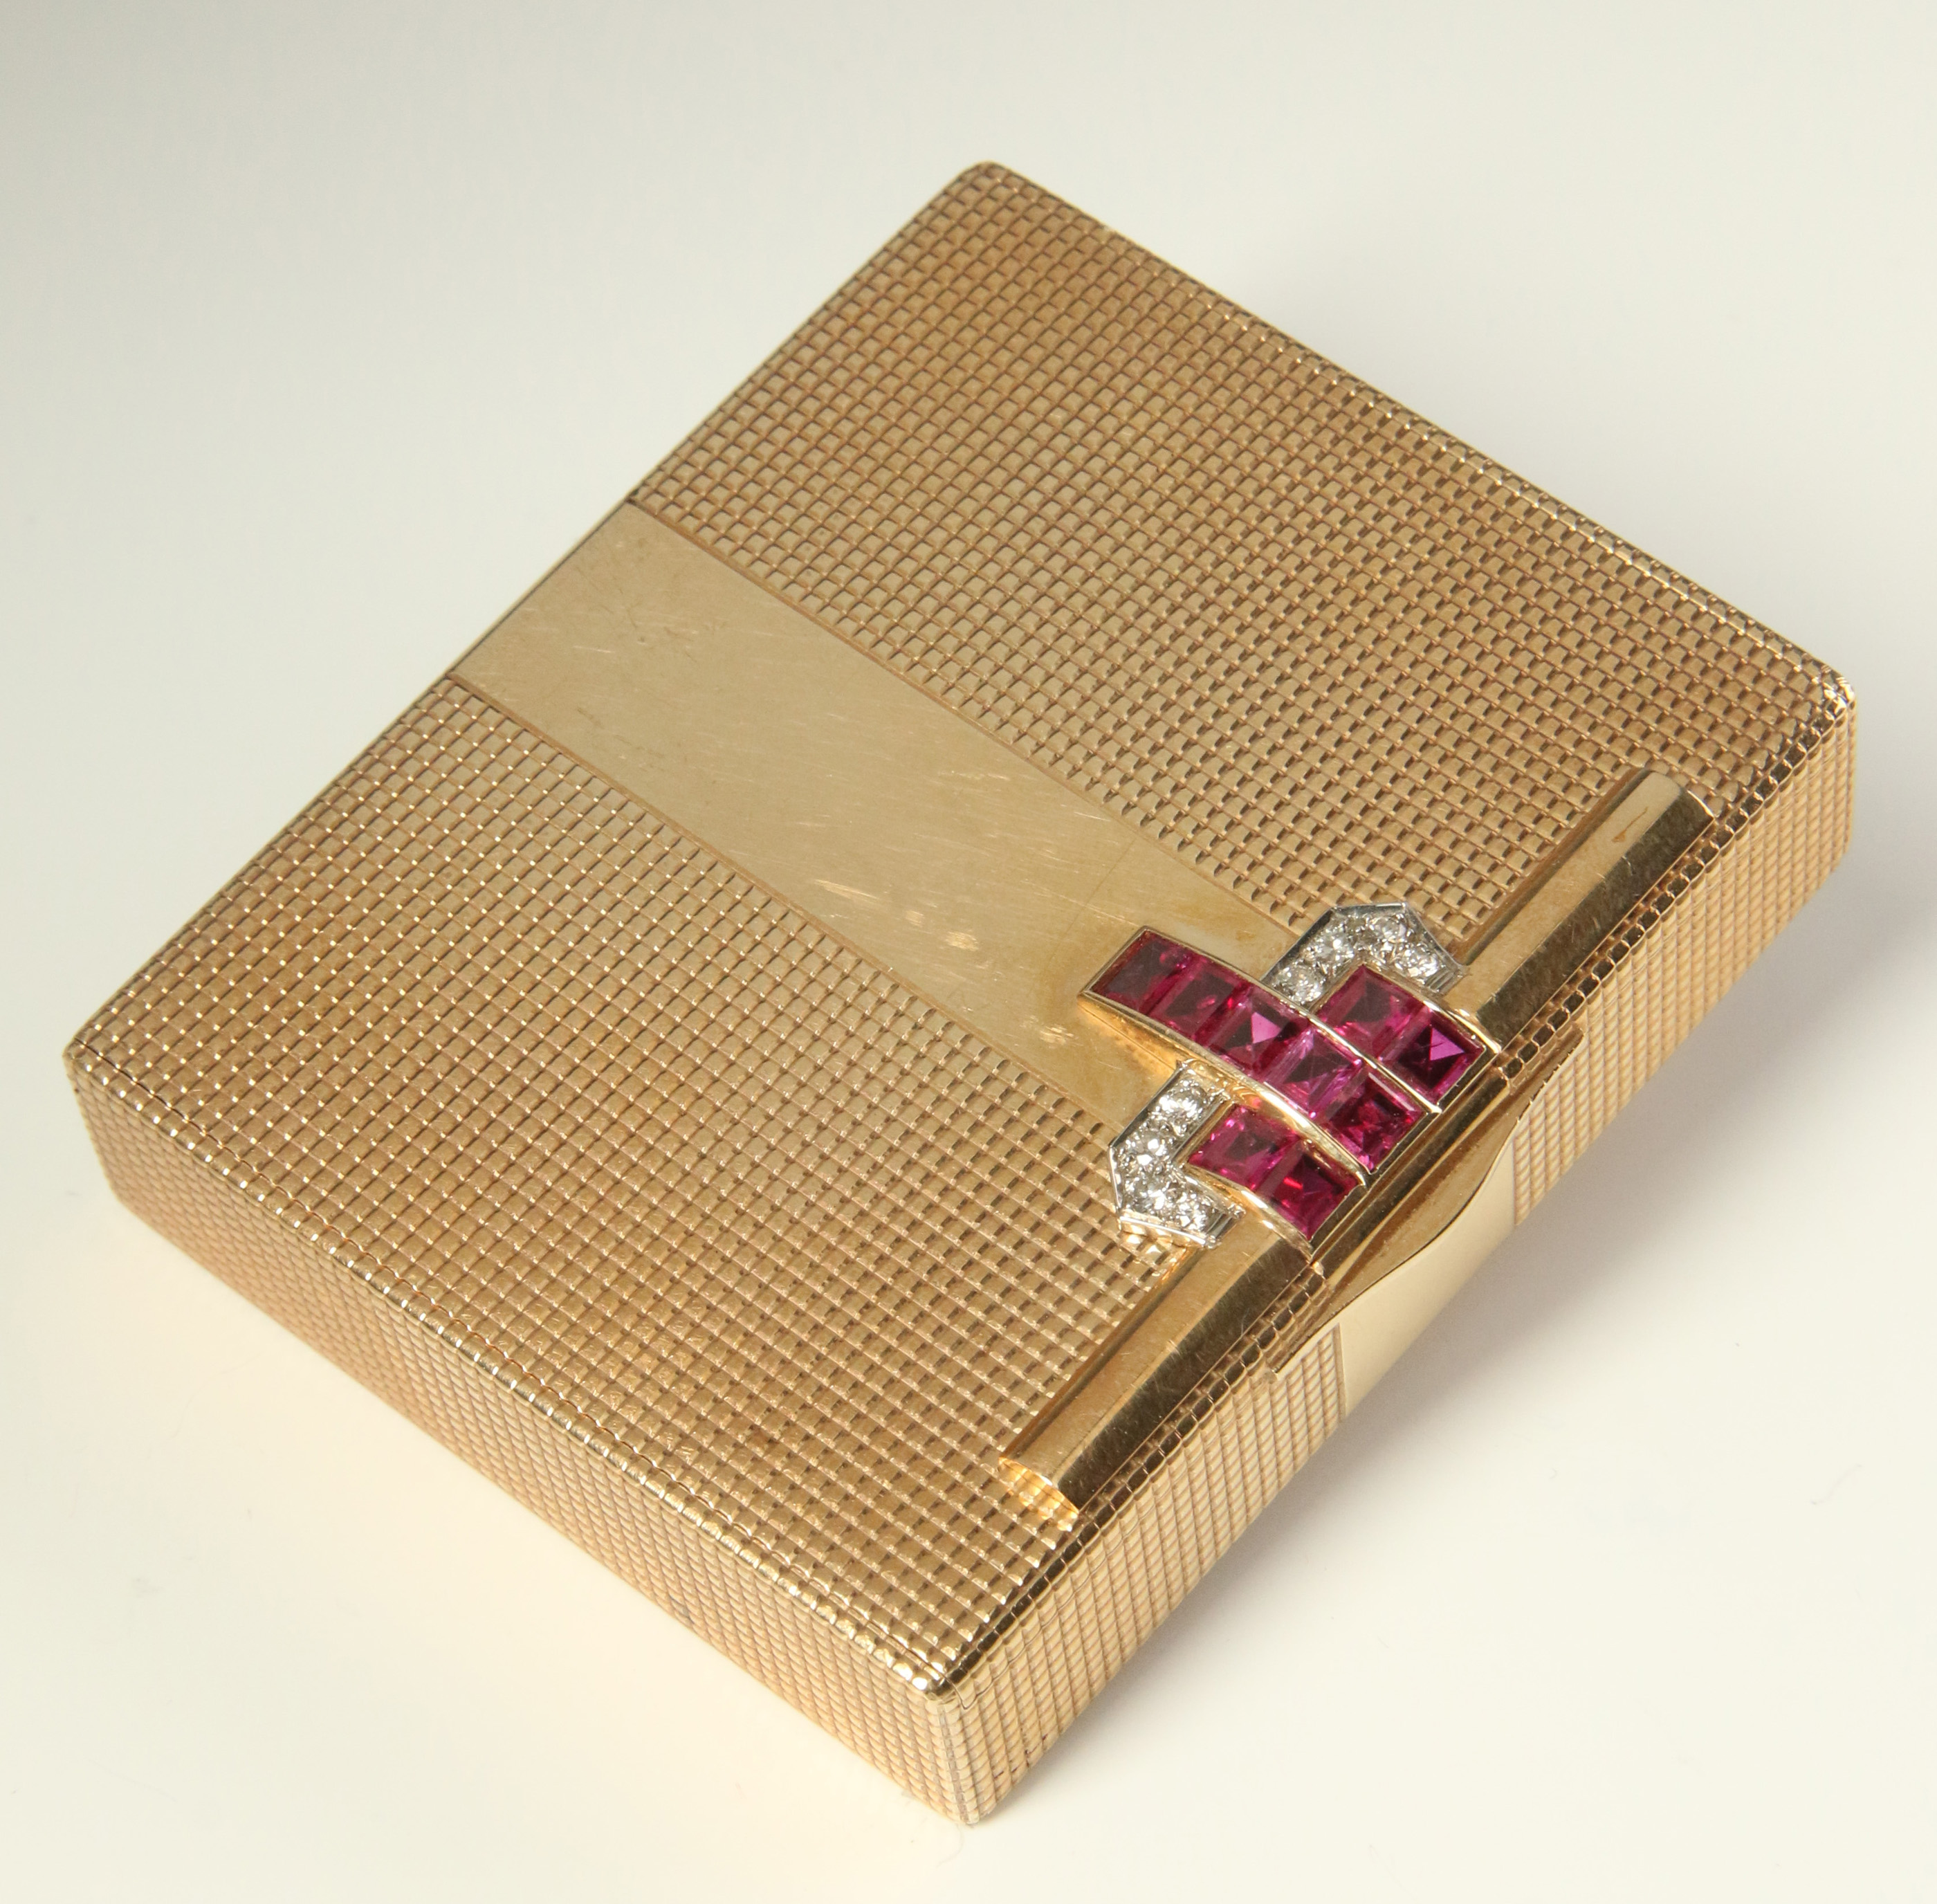 A TIFFANY & CO 14K ART DECO RUBY AND DIAMOND BOX